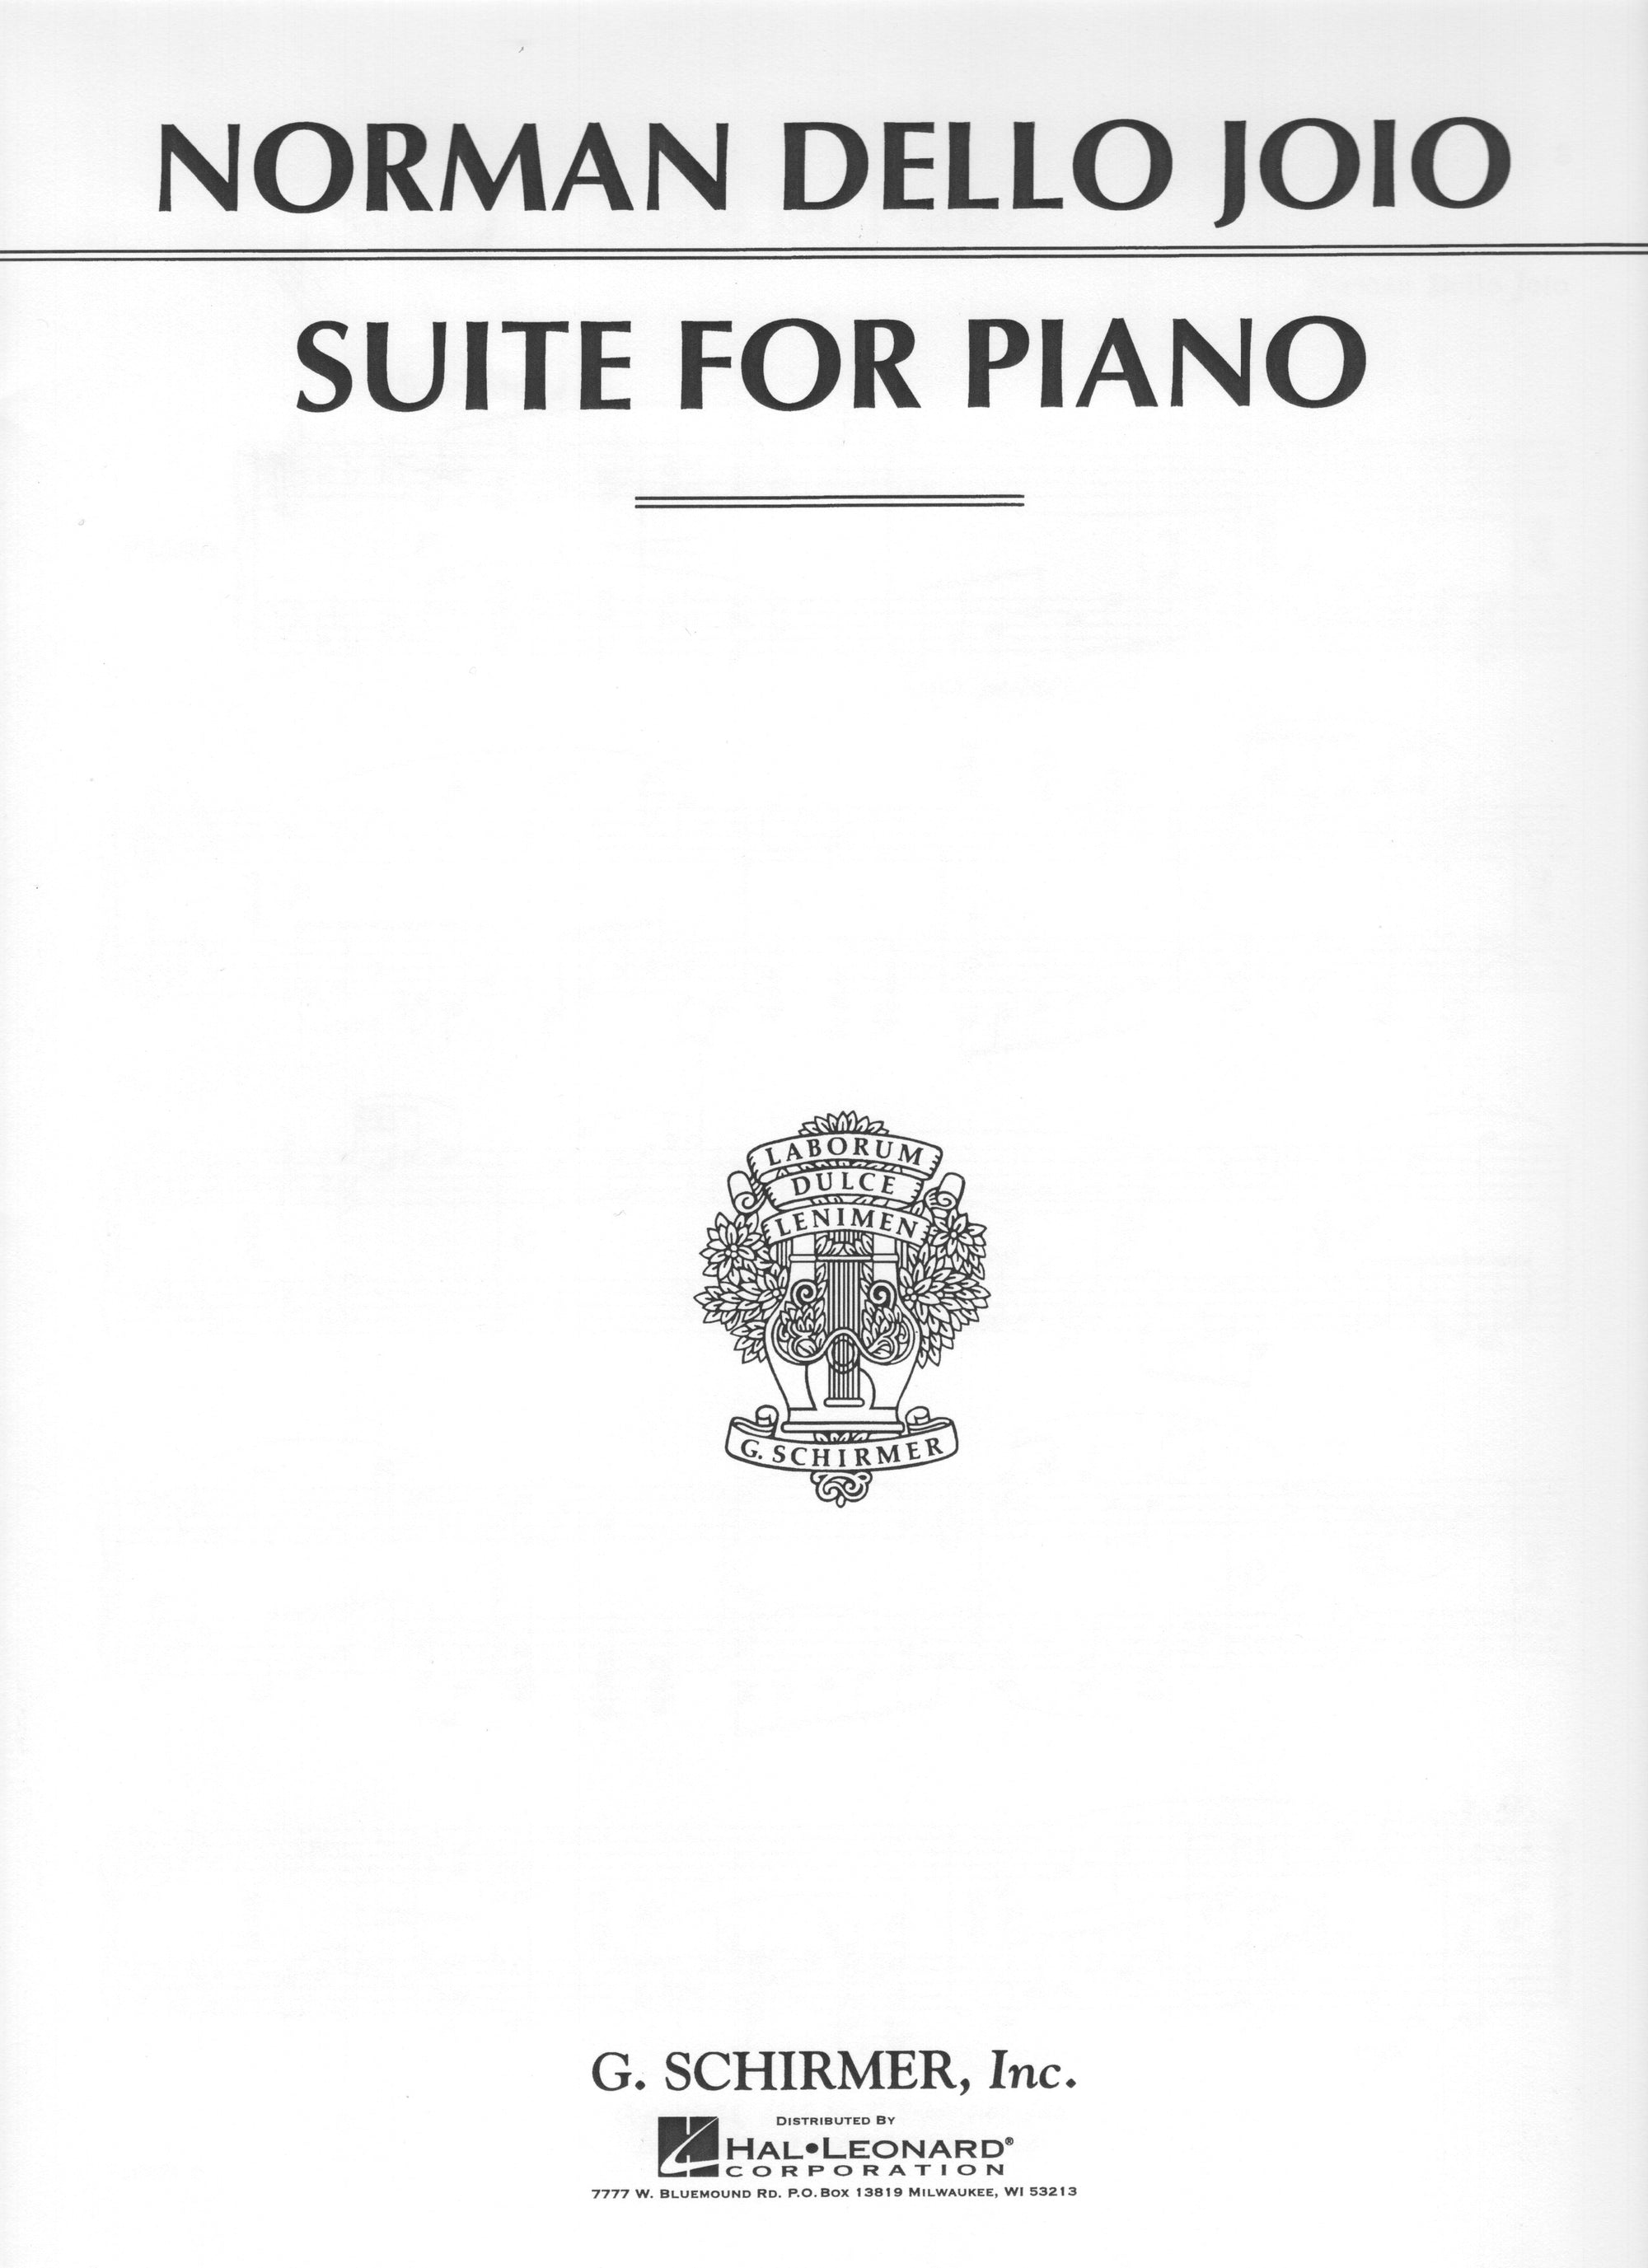 Dello Joio: Suite for Piano